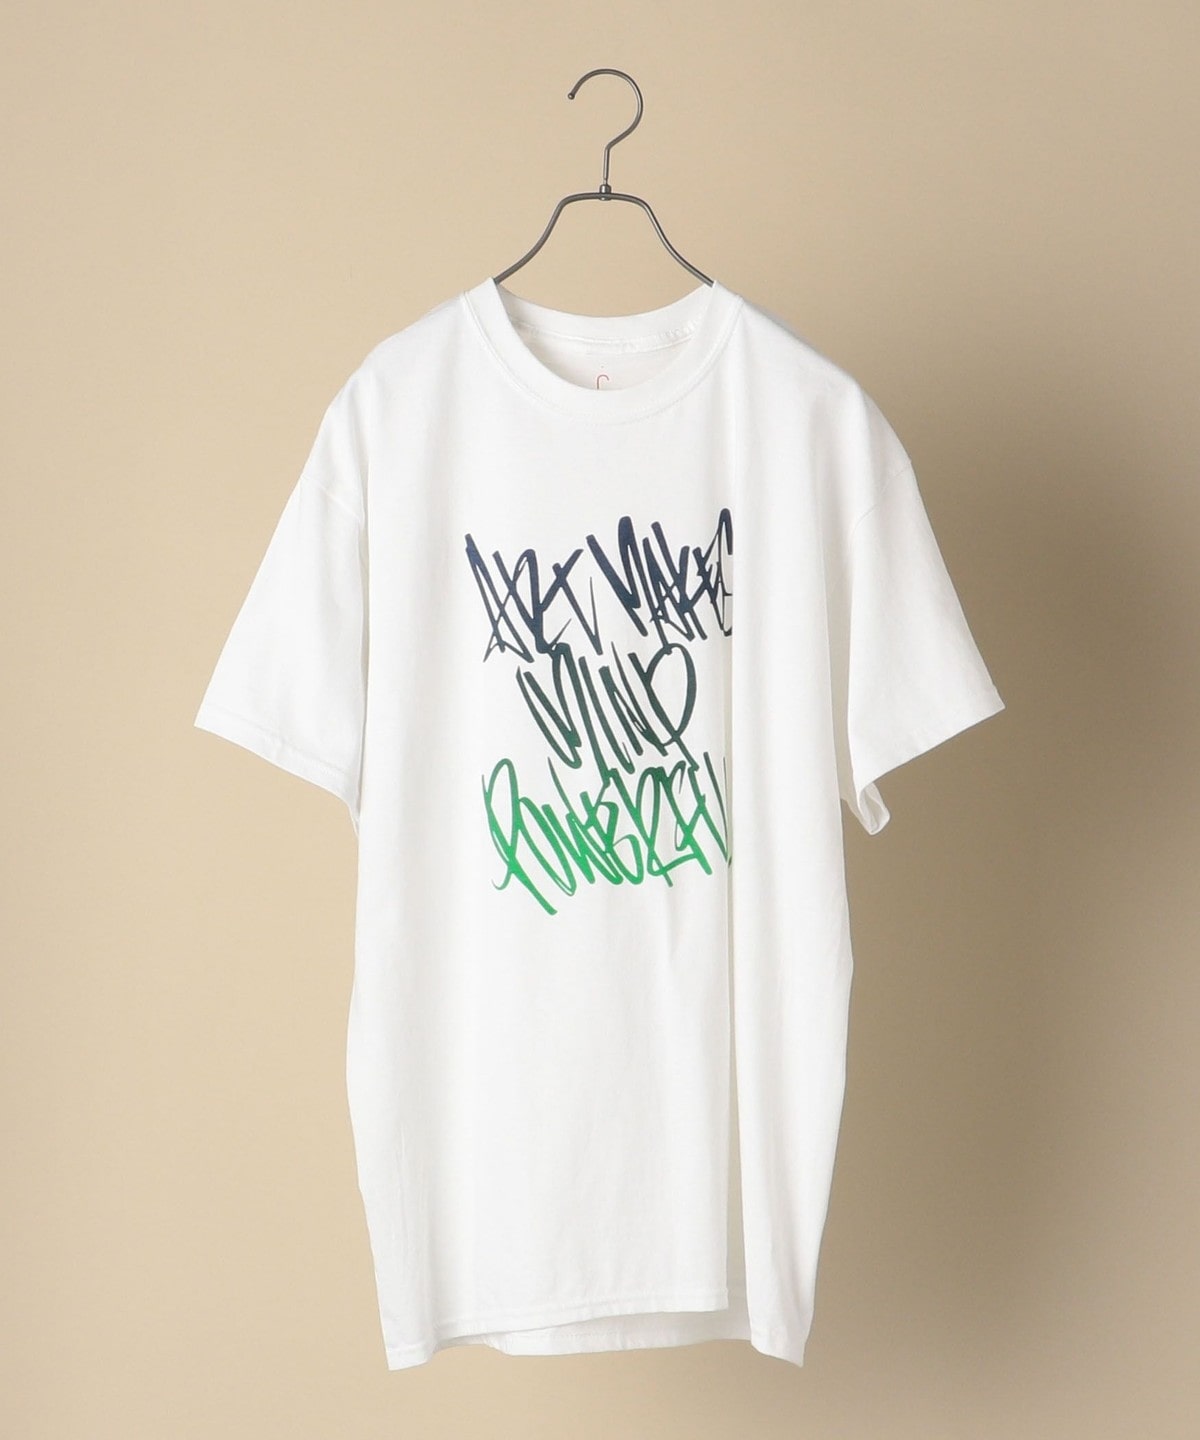 .cvs: AMANE MURAKAMI グラフィックデザイン Tシャツ No.2 ホワイト